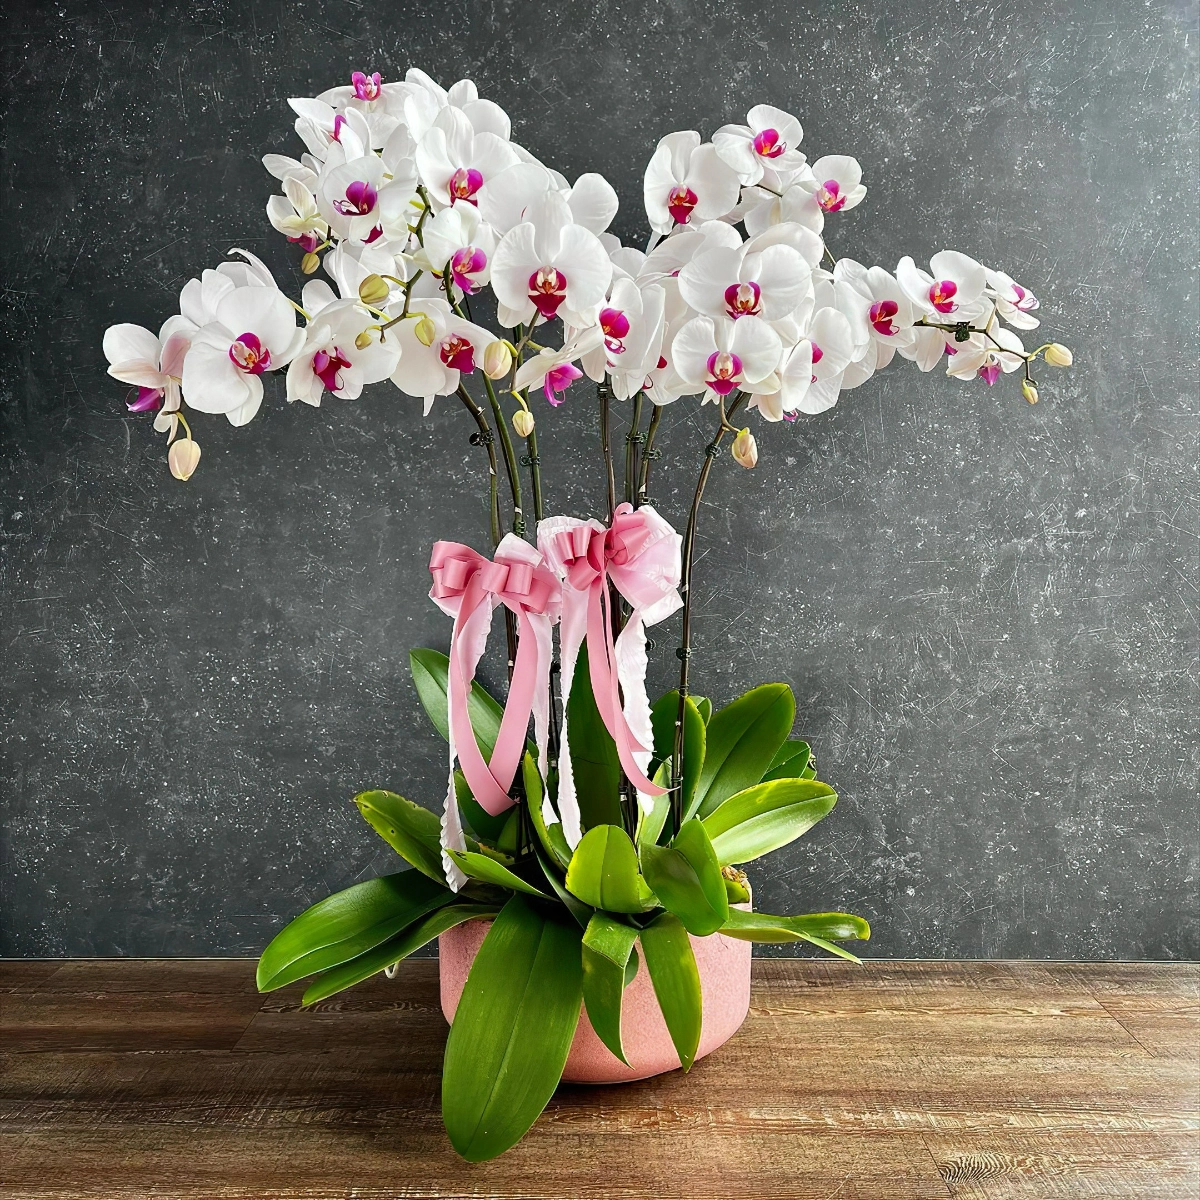 kartoffelwasser als duenger fuer orchideeen grosse bluehende orchidee in weiss und rosa kims.florist